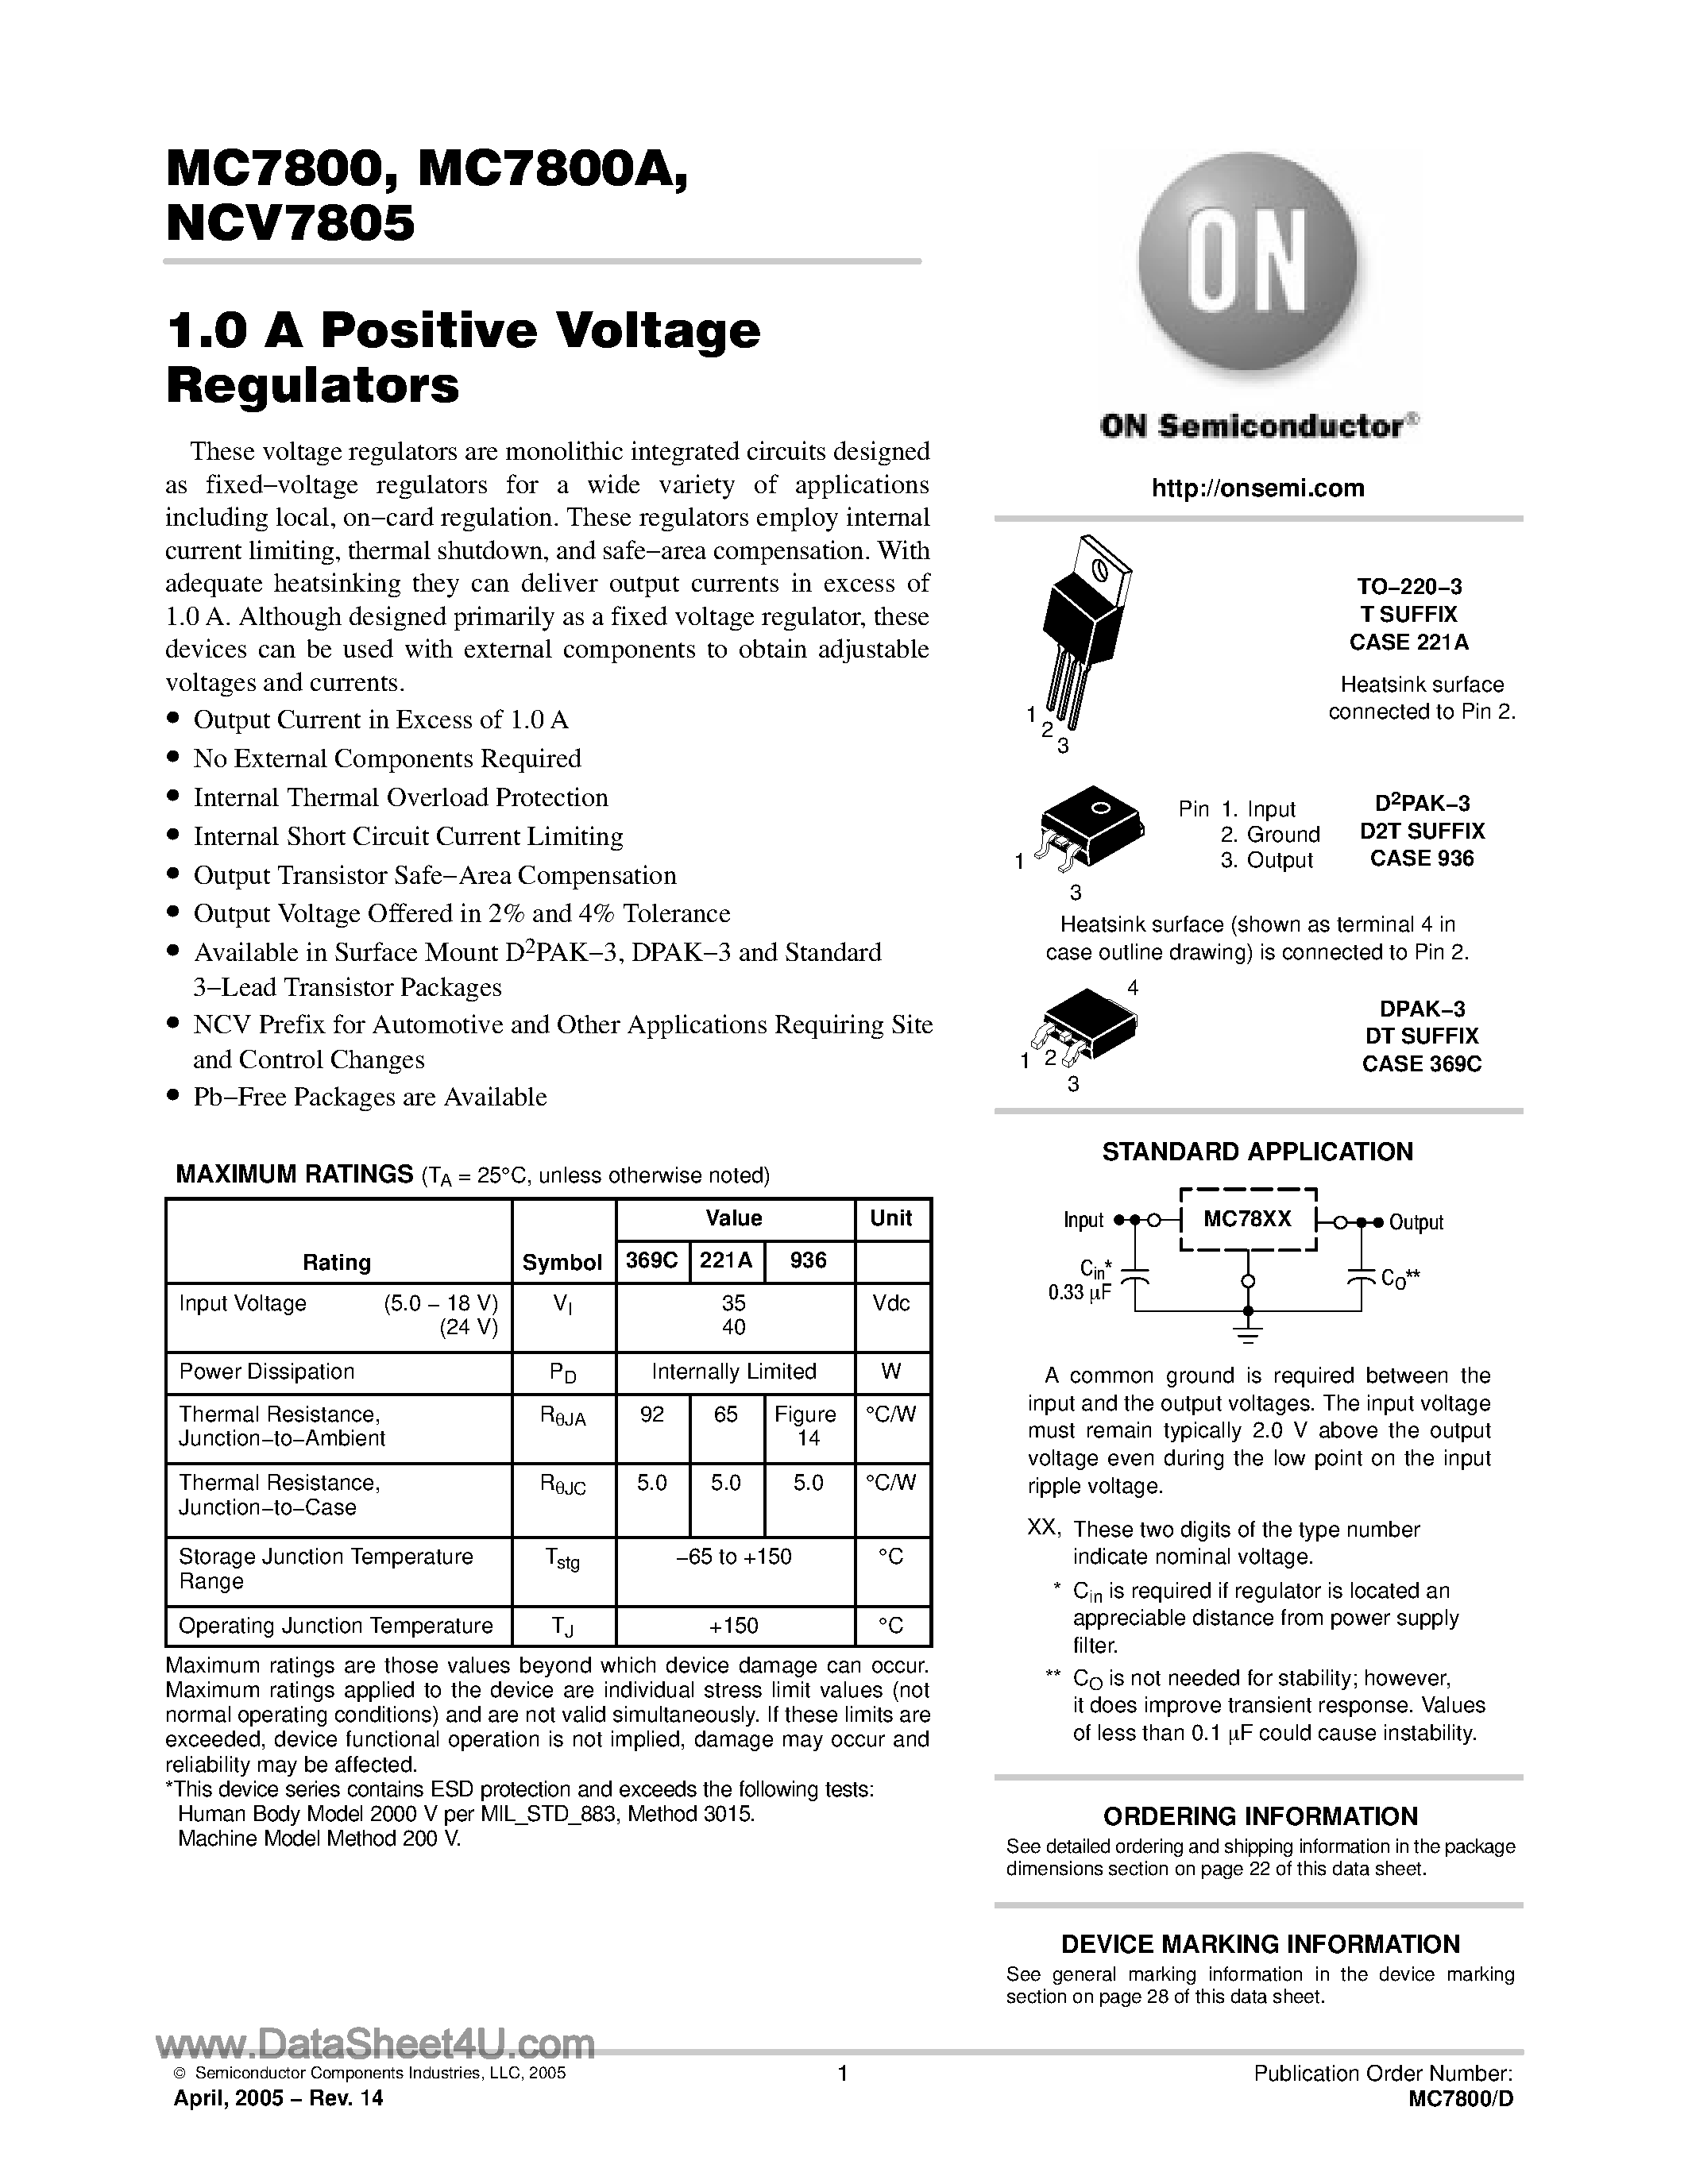 Даташит MC7800 - (MC7800 Series) 1A Positive Voltage Regulator страница 1